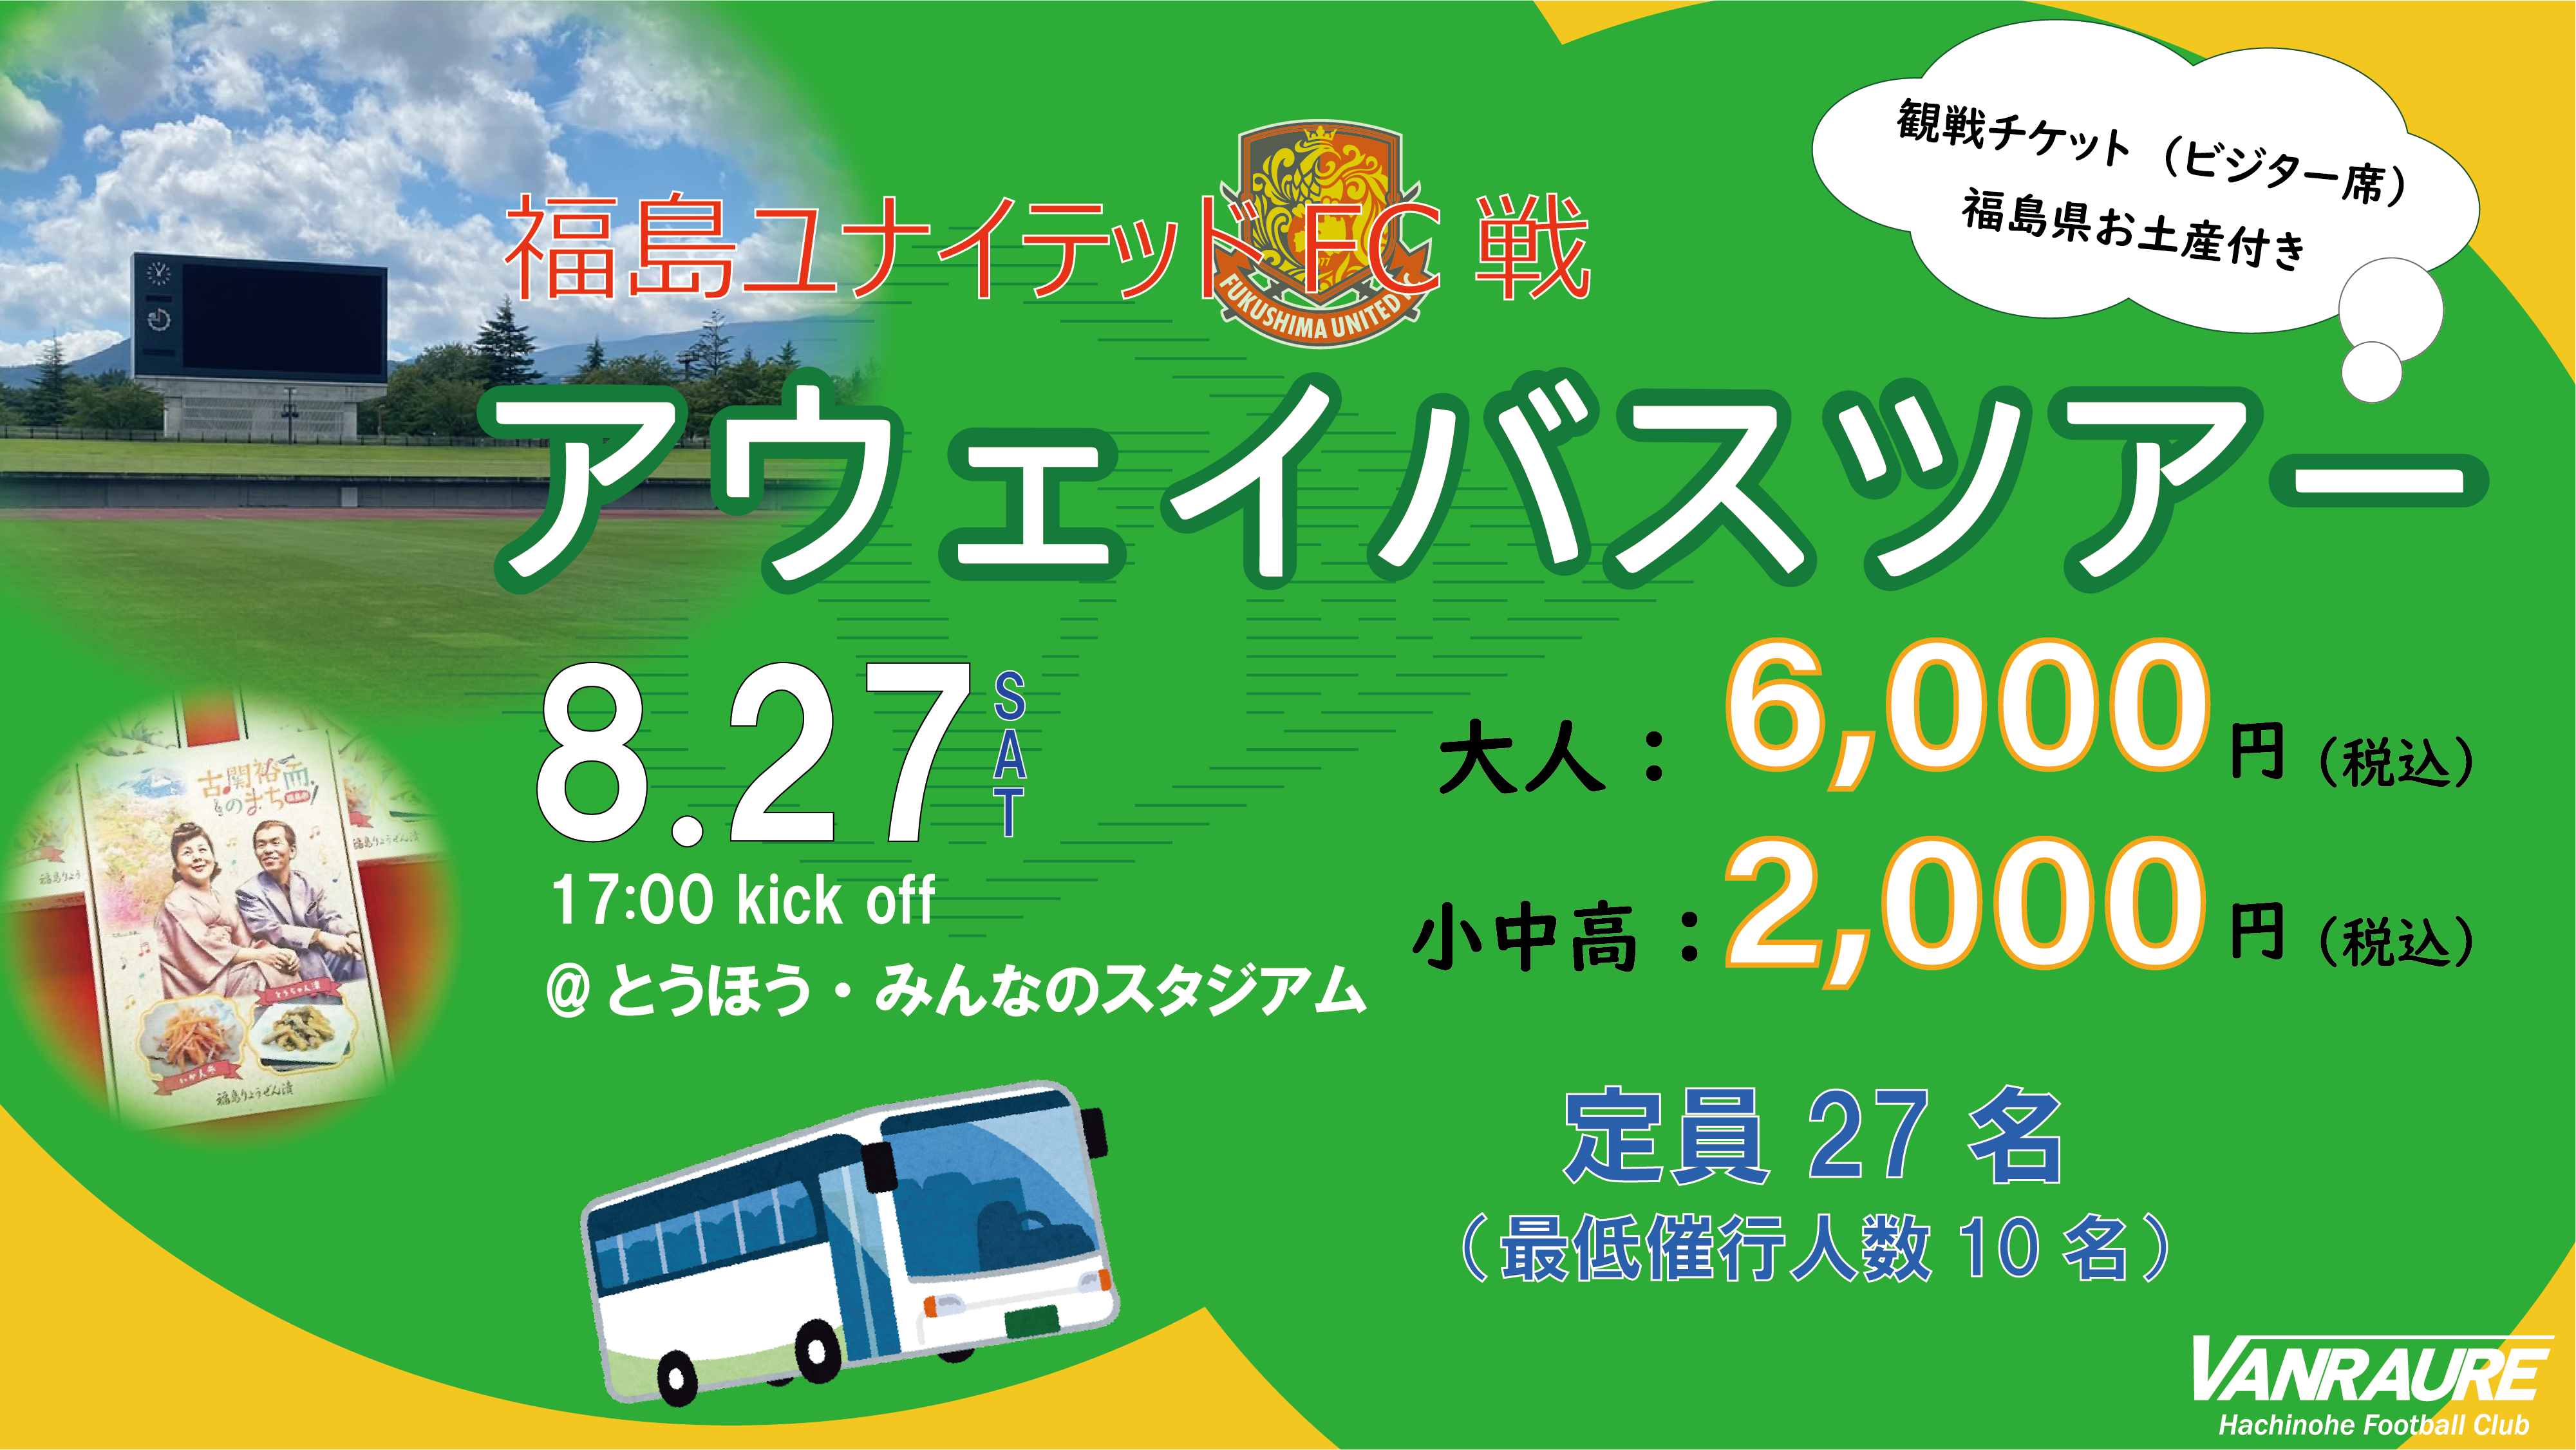 8月27日 福島ユナイテッドfc戦 バスツアー車内イベント決定 ヴァンラーレ八戸fcオフィシャルサイト